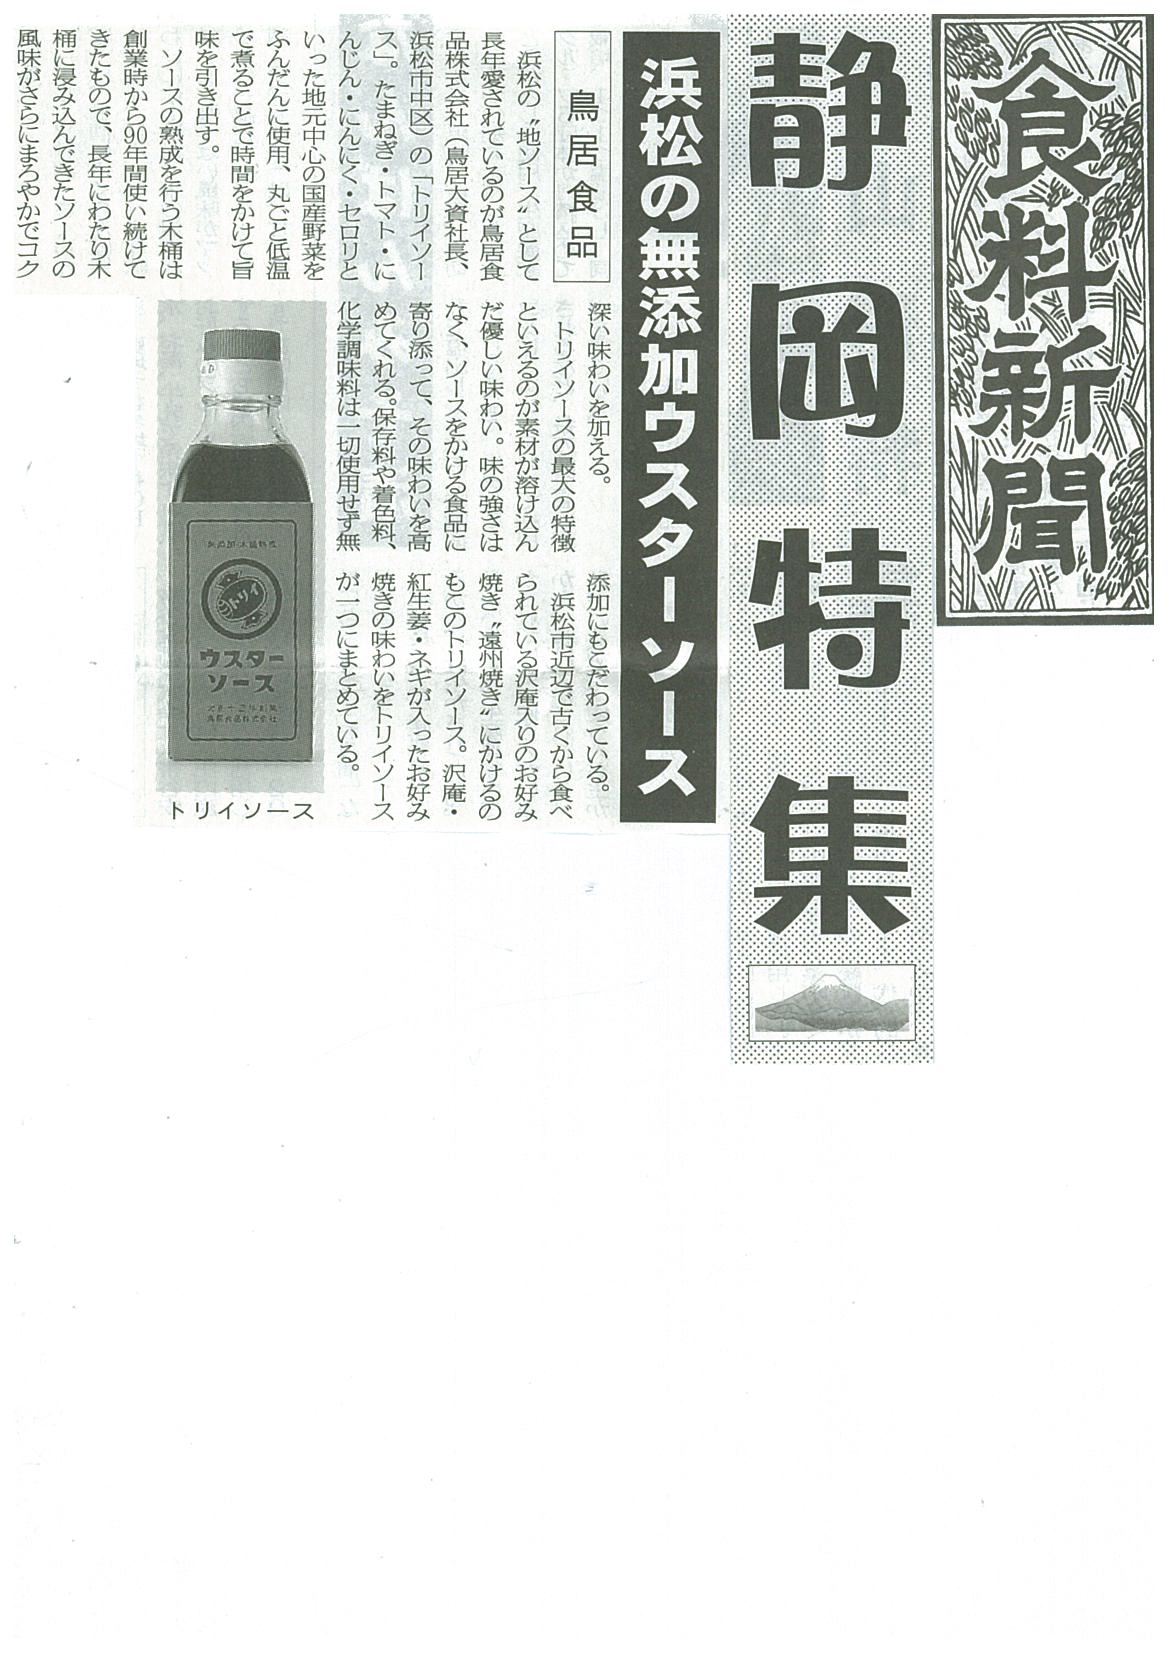 http://www.torii-sauce.jp/media/%E9%A3%9F%E6%96%99%E6%96%B0%E8%81%9E%E6%9C%AC%E3%82%A6%E3%82%B9.jpg